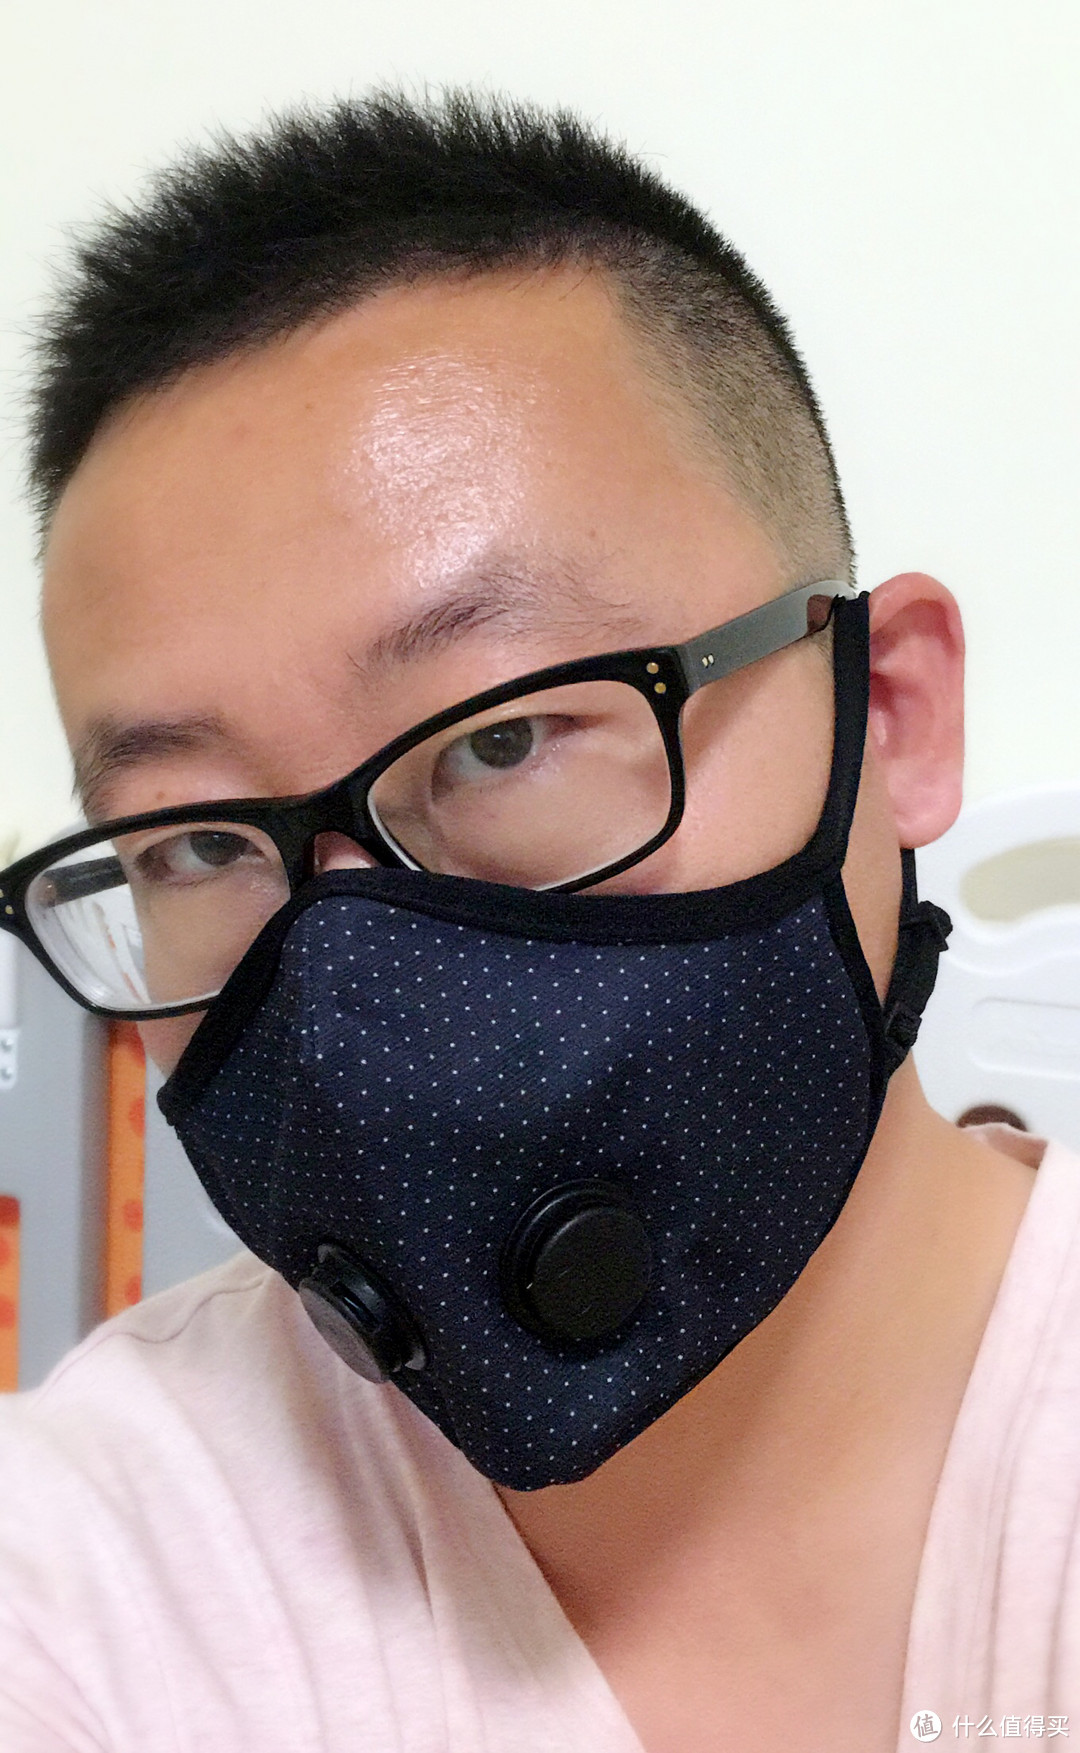 口罩中的劳斯莱斯-Airinum瑞典超敏感双呼气阀都市防雾霾生活口罩